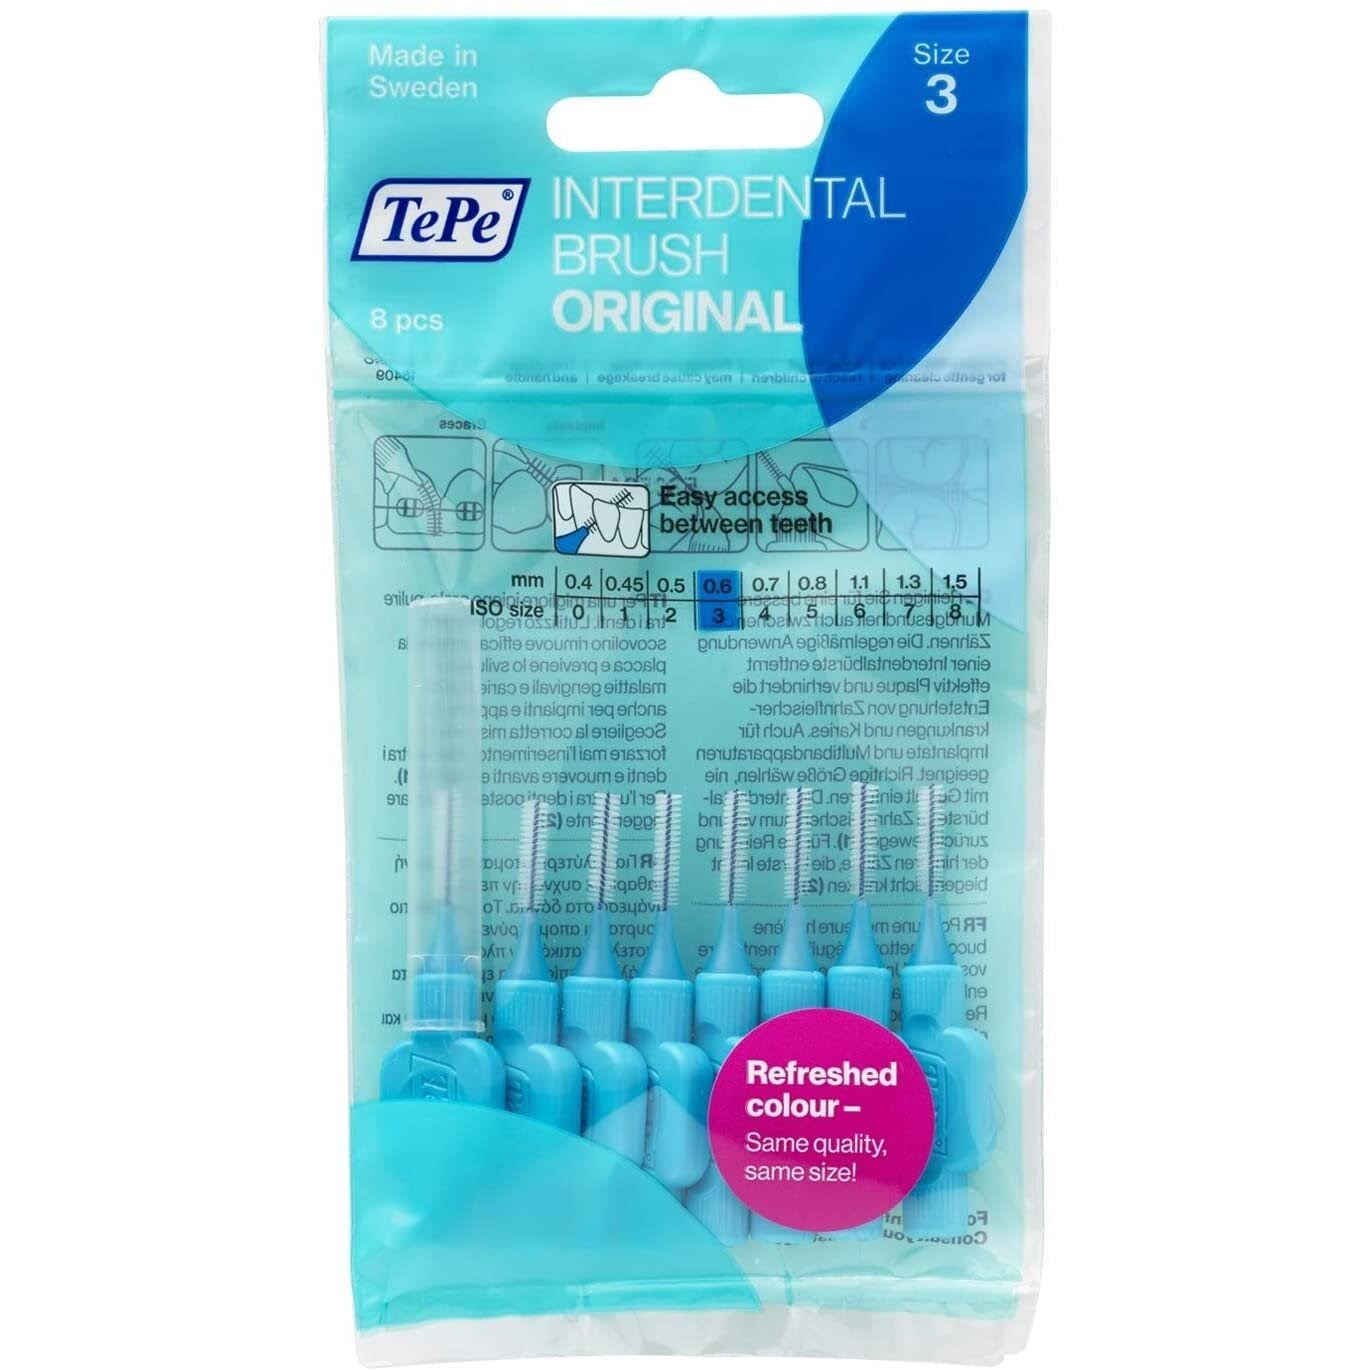 TePe Blue 0.6mm Interdental Brush - Pack of 8 Brushes